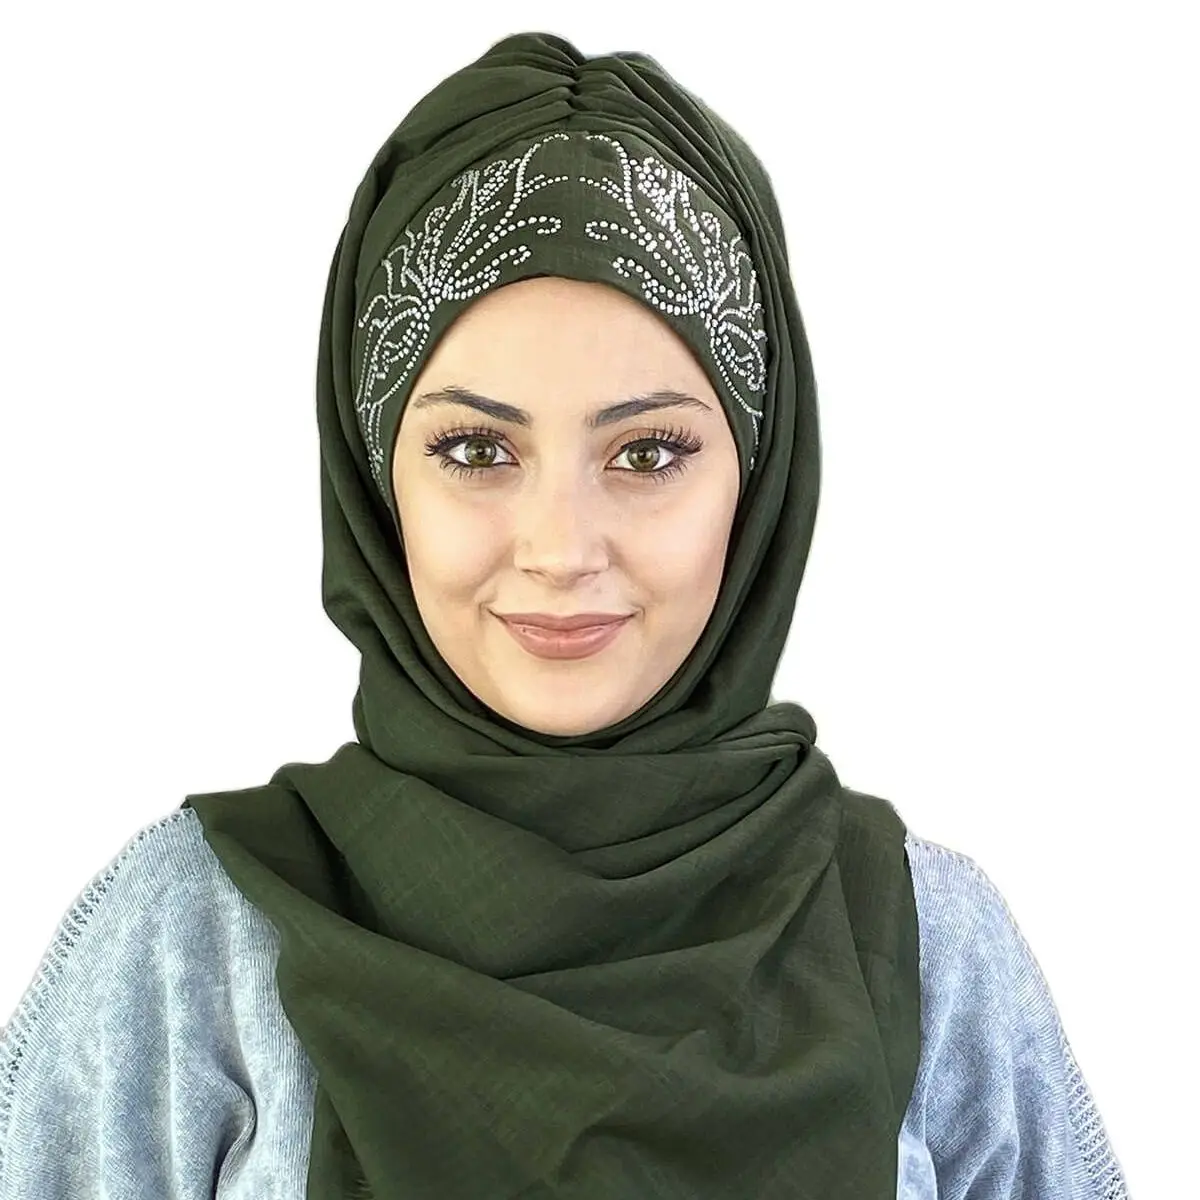 Хаки, зеленое, белое вечернее платье с принтом камней, шаль, новый модный мусульманский женский шарф 2021, трендовый хиджаб, который сразу же г...